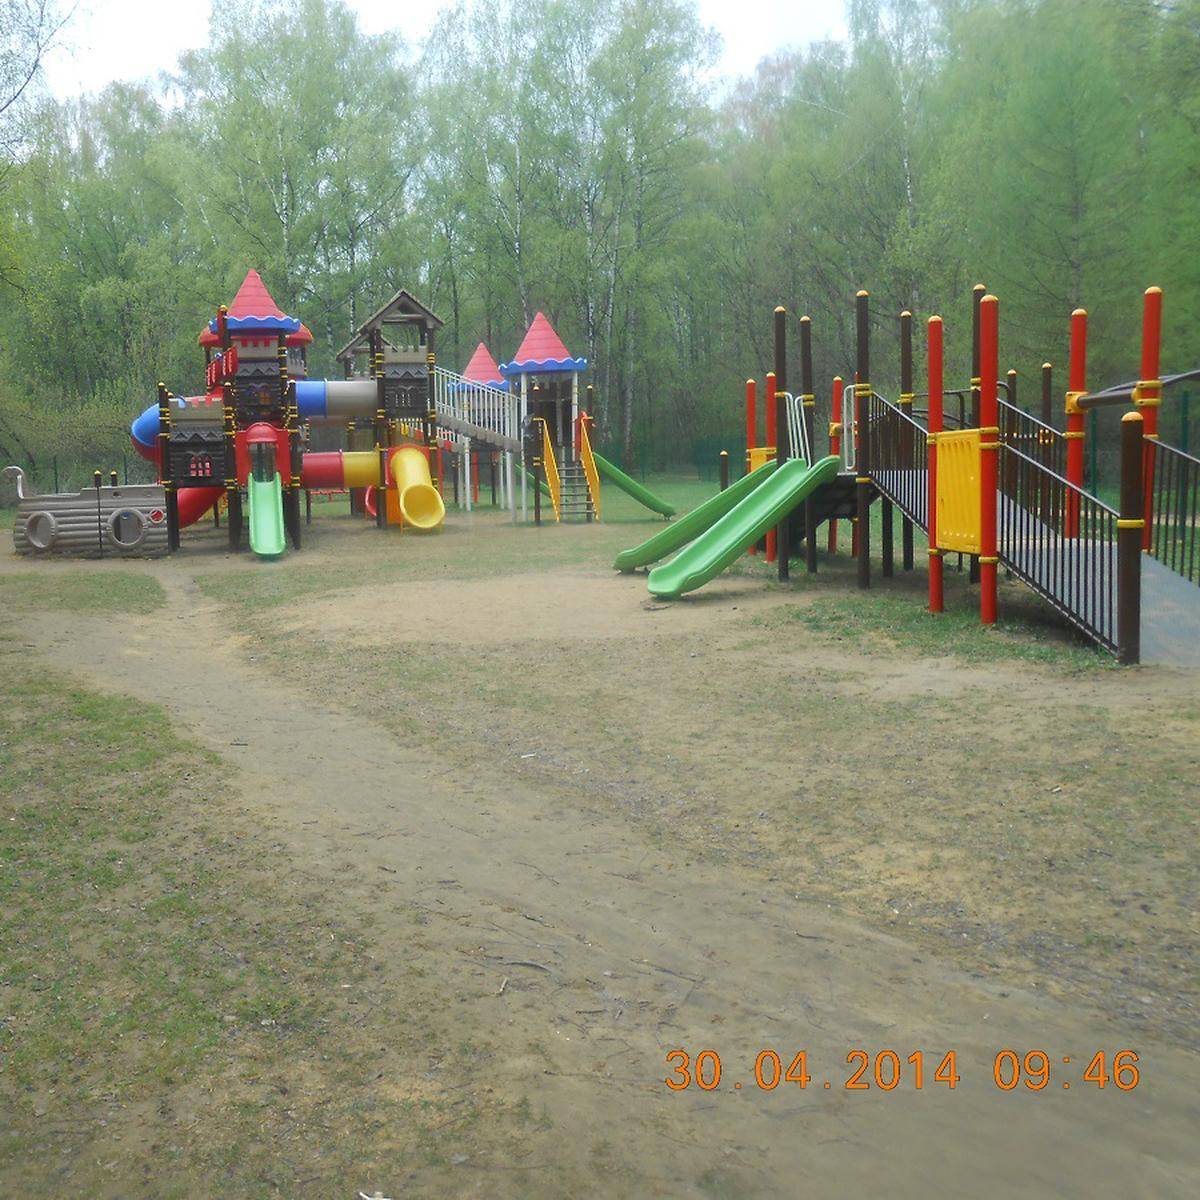 Фото: Детская игровая площадка №1, Лесопарк Кусково